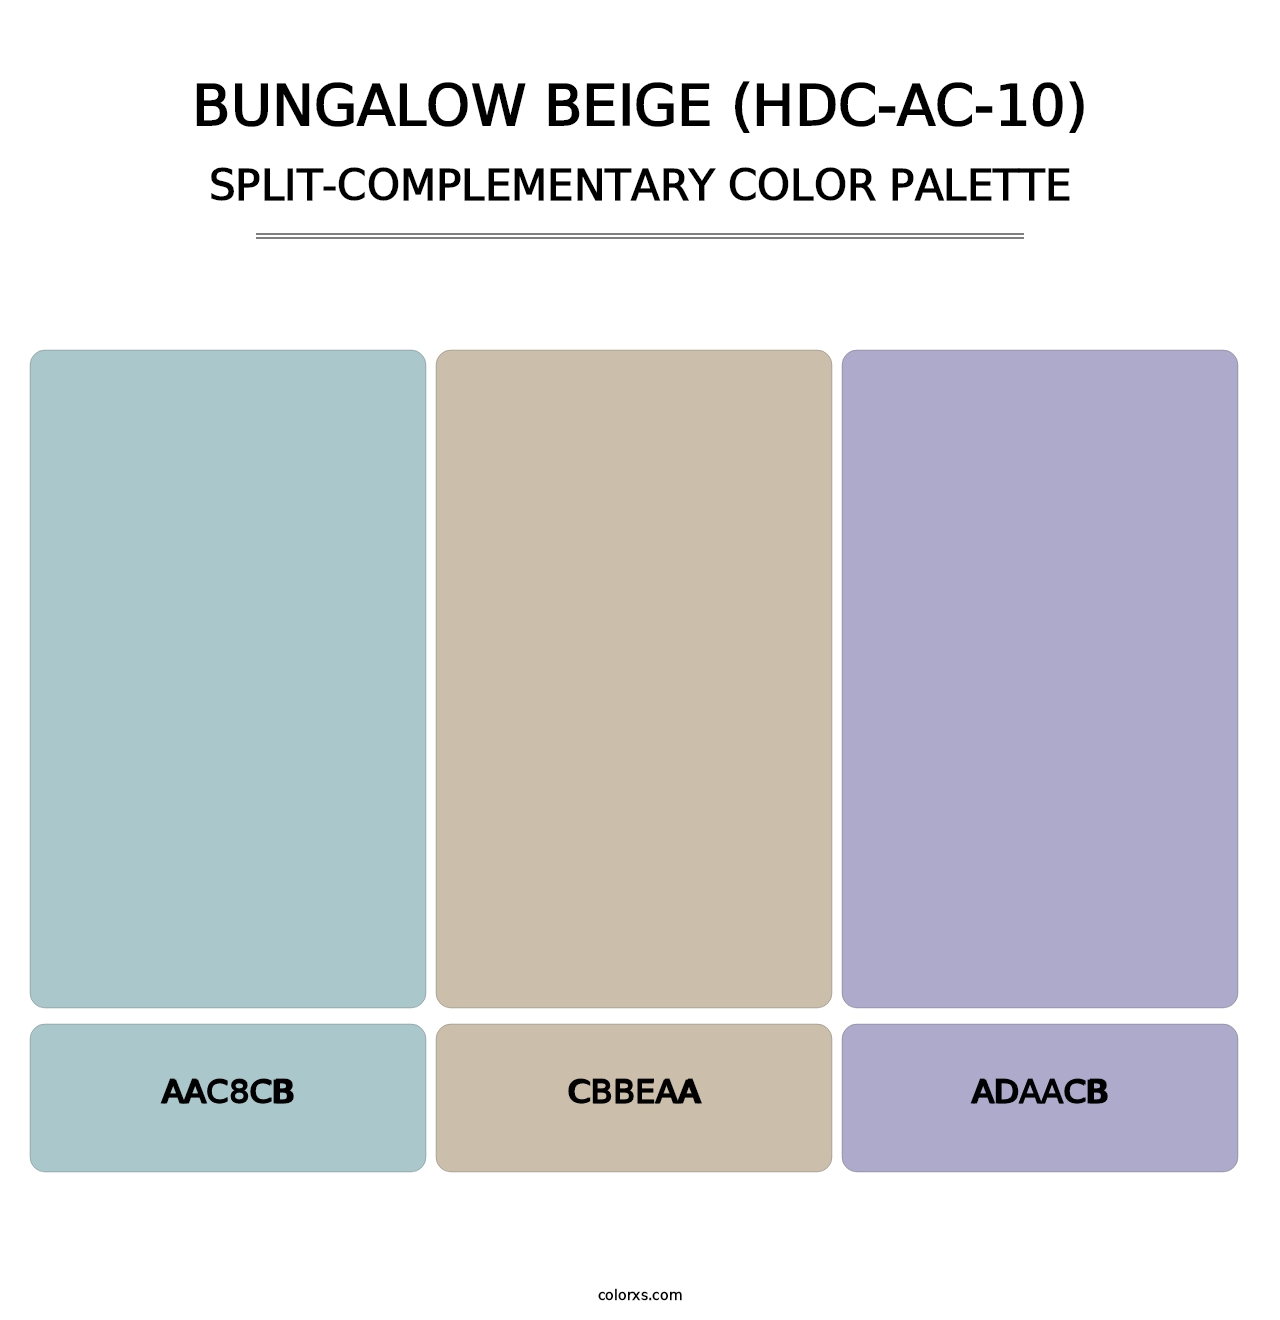 Bungalow Beige (HDC-AC-10) - Split-Complementary Color Palette